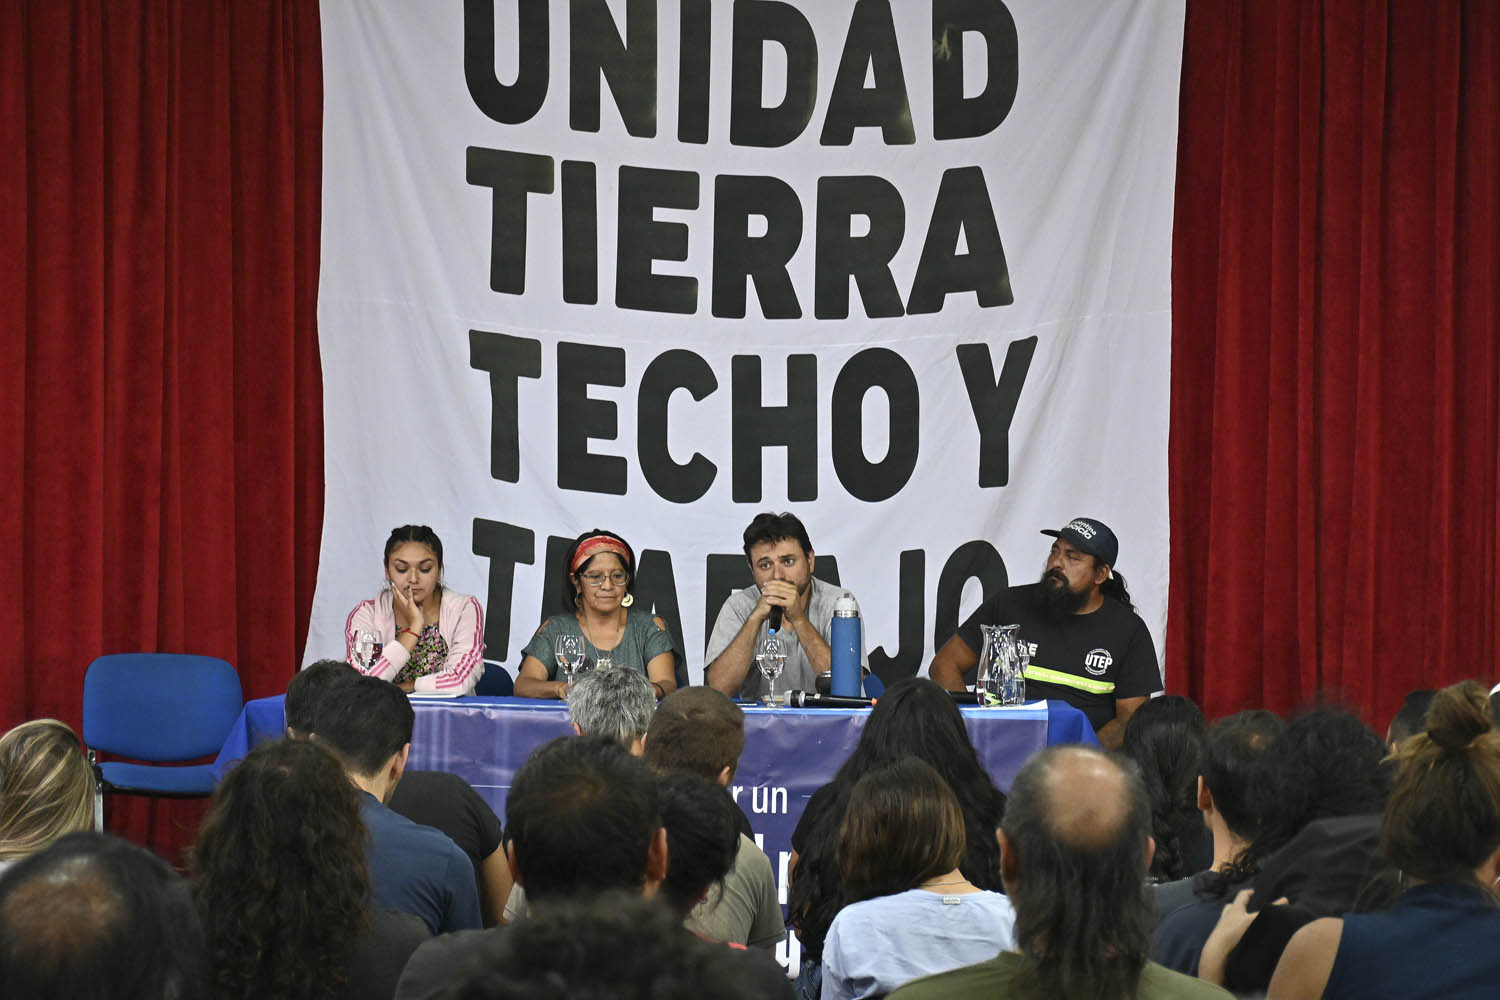 El dirigente social Juan Grabois encabezó este jueves en Bariloche un encuentro partidario en la sede del CRUB de la Universidad Nacional del Comahue. (foto Alfredo Leiva)